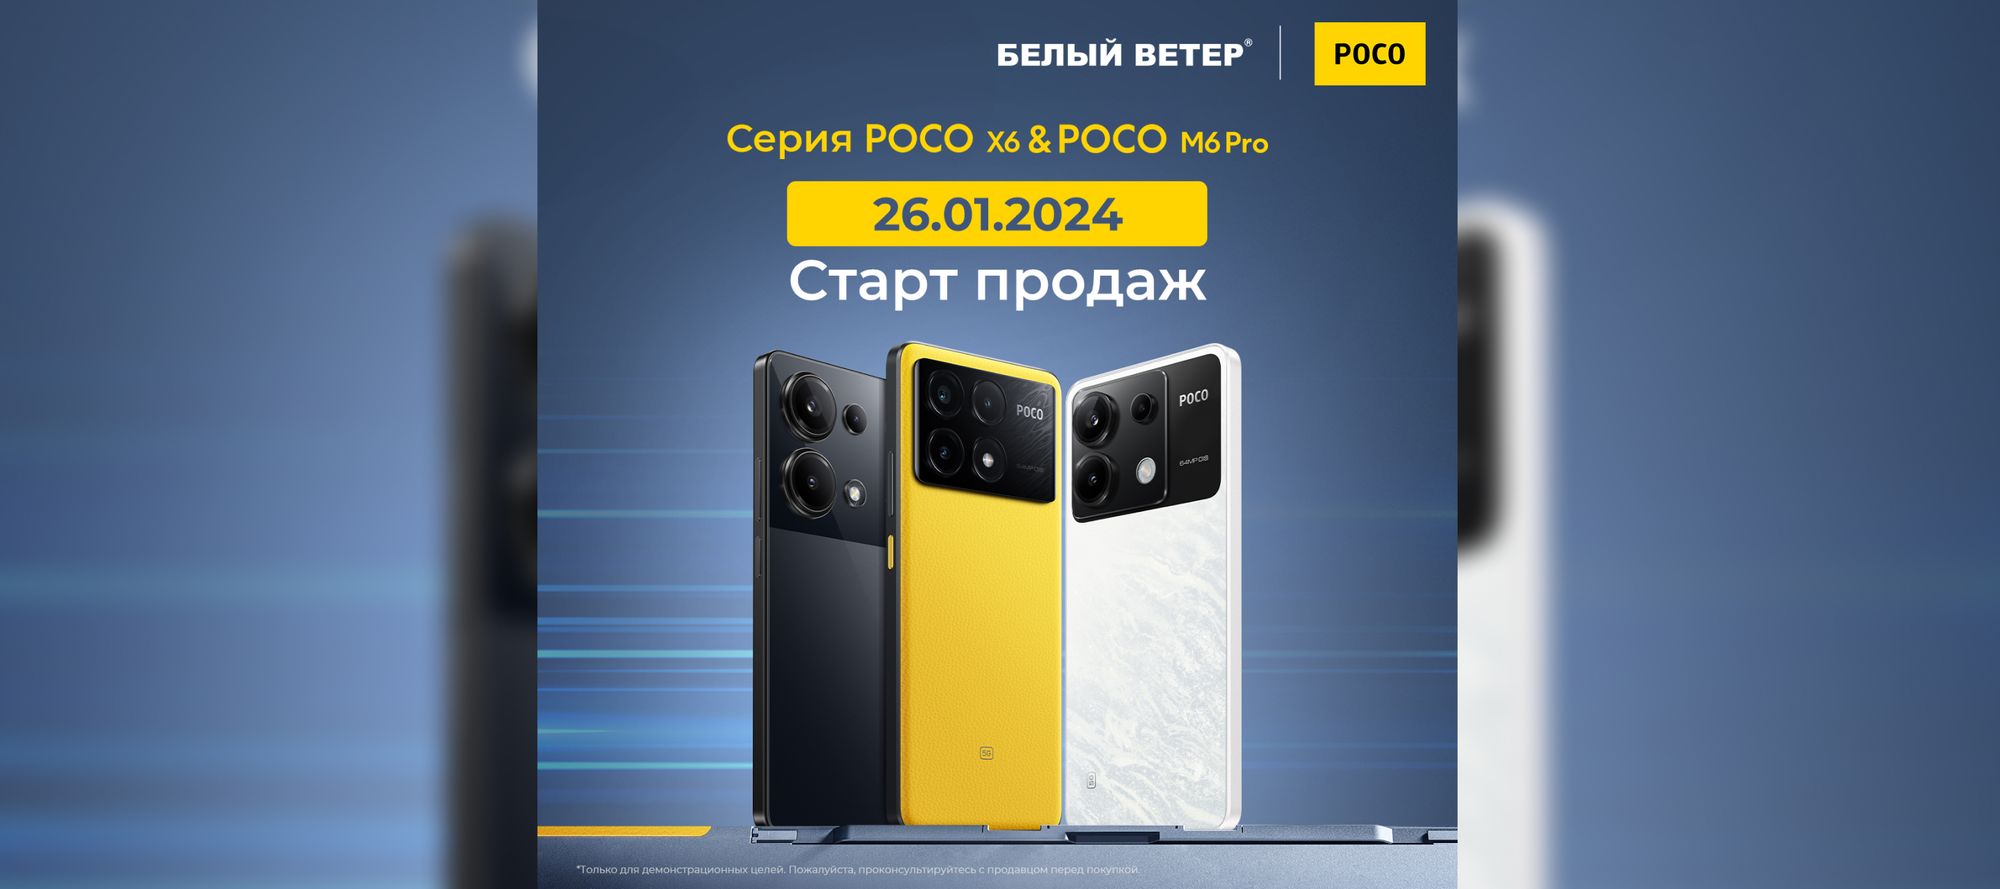 Новинки от POCO: смартфоны X6 Pro, X6 и M6 Pro